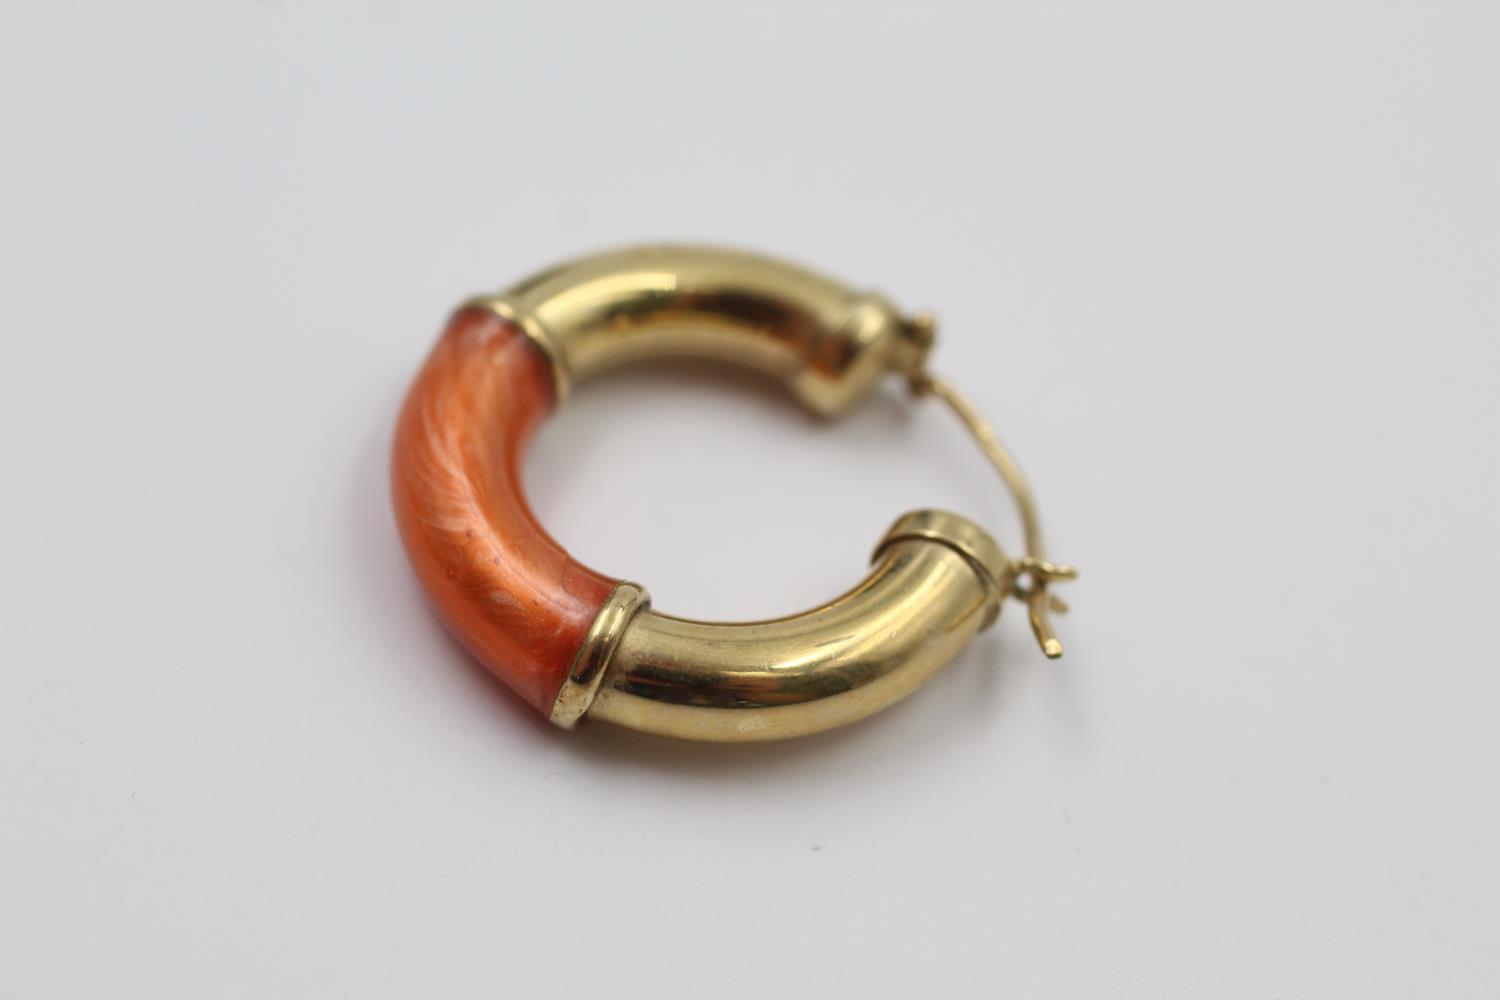 9ct gold enamel hoop earrings 4.1 grams gross - Image 2 of 5